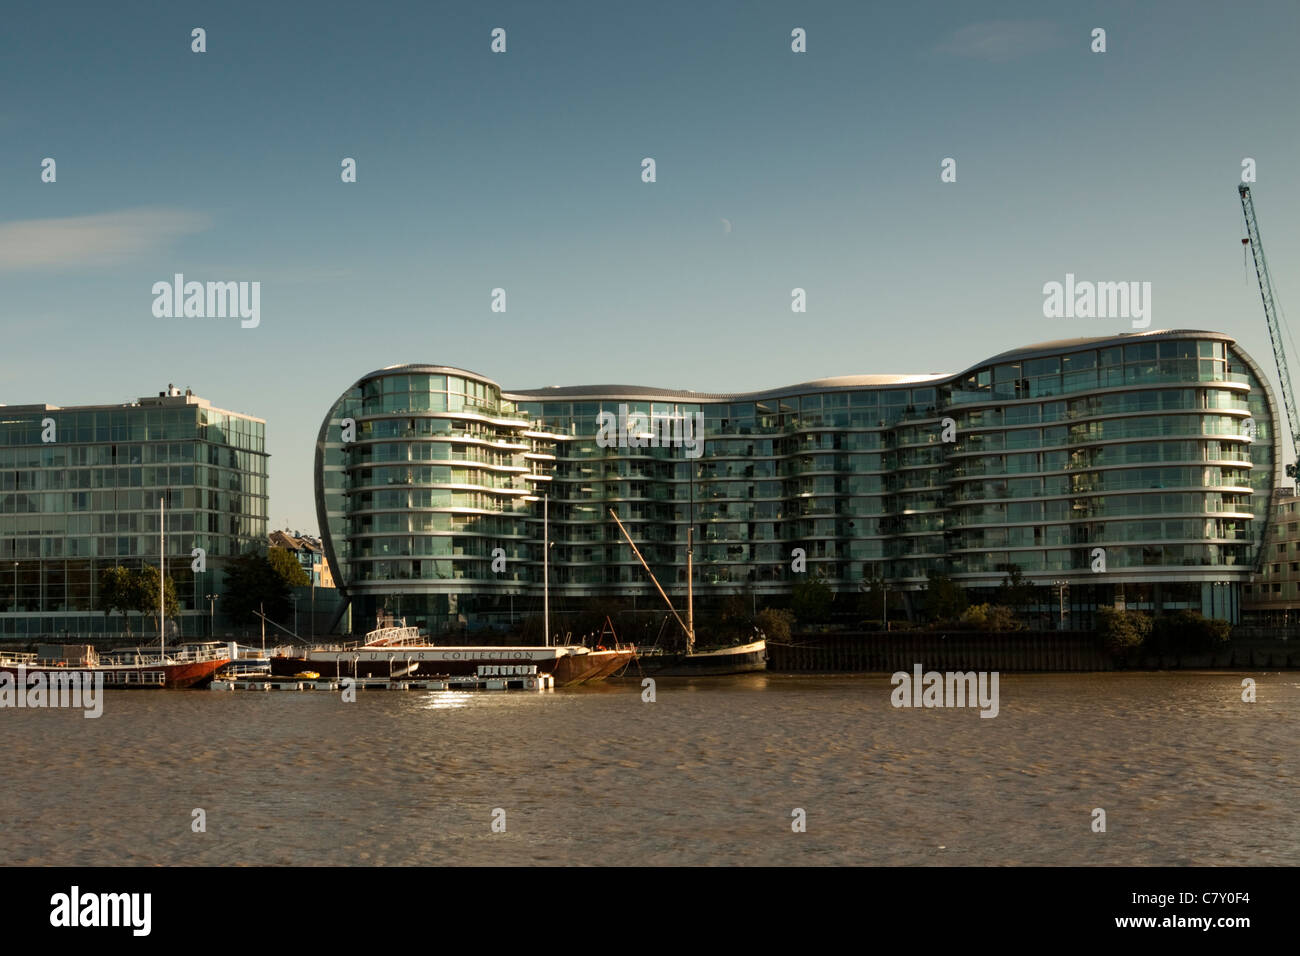 Riverside Albion bâtiment sur les rives de la Tamise, Battersea, Londres, Angleterre, Royaume-Uni Banque D'Images